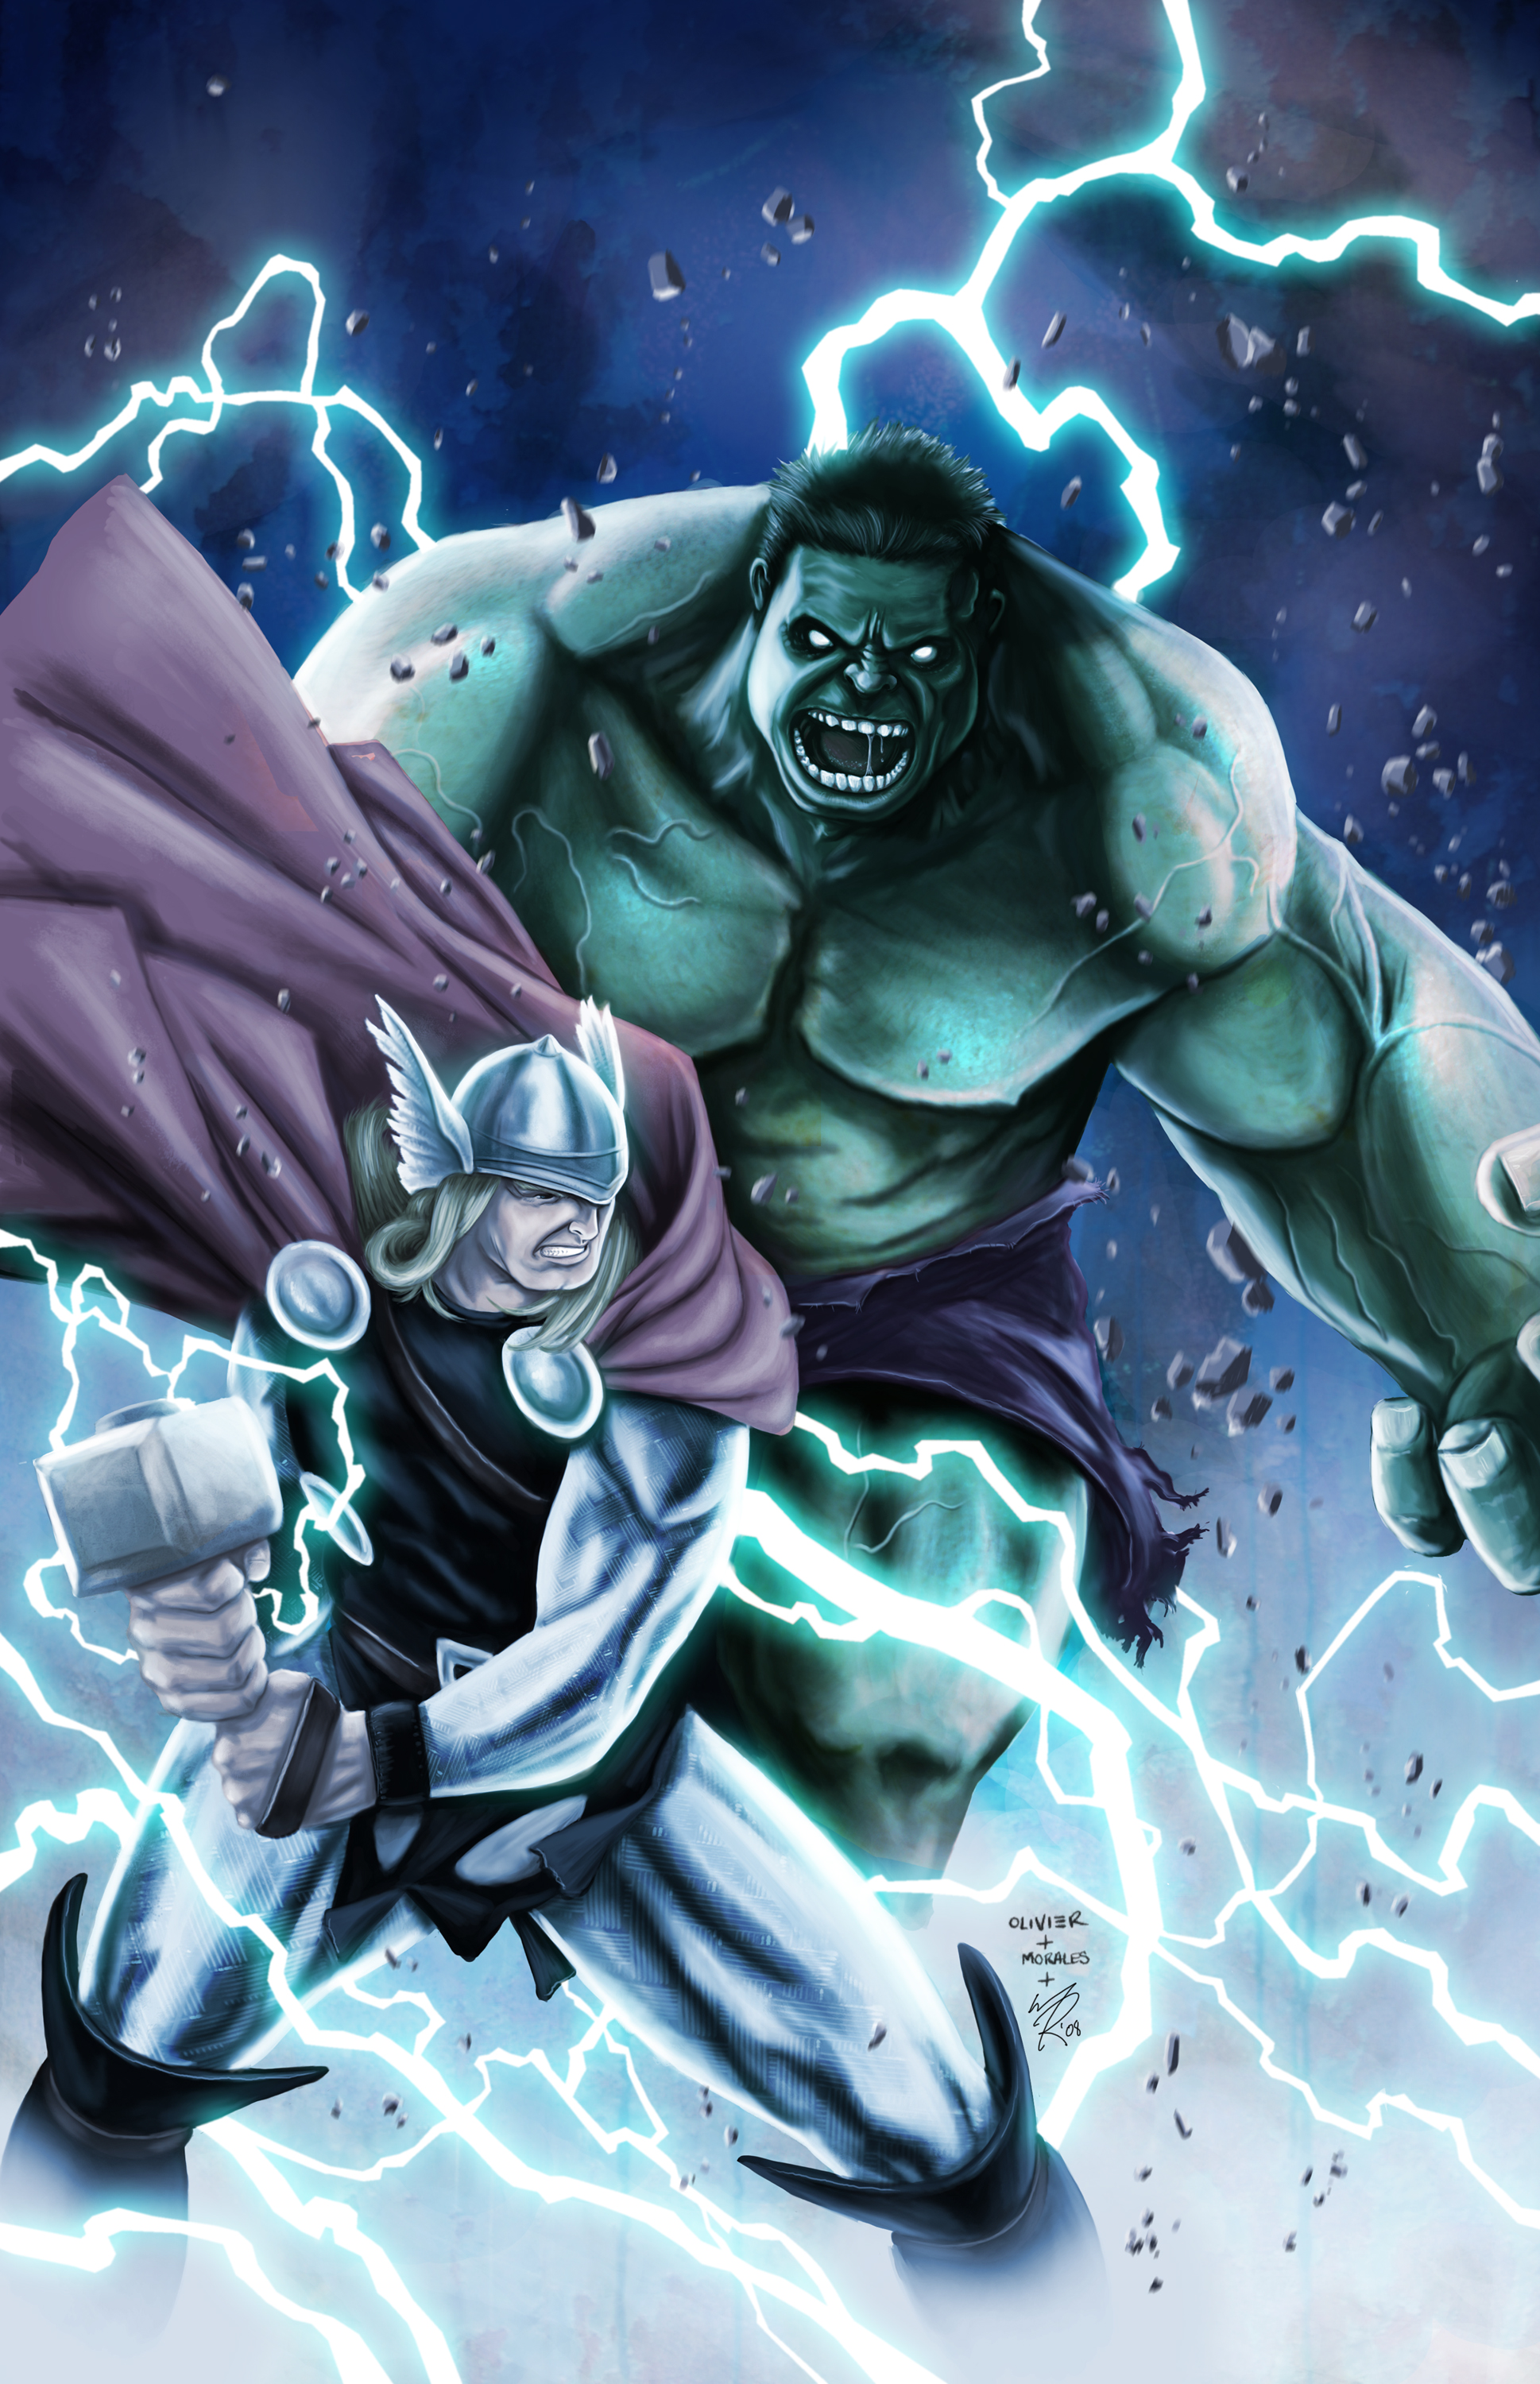 2009 Wallpaper For Mobile - Thor Vs Hulk , HD Wallpaper & Backgrounds